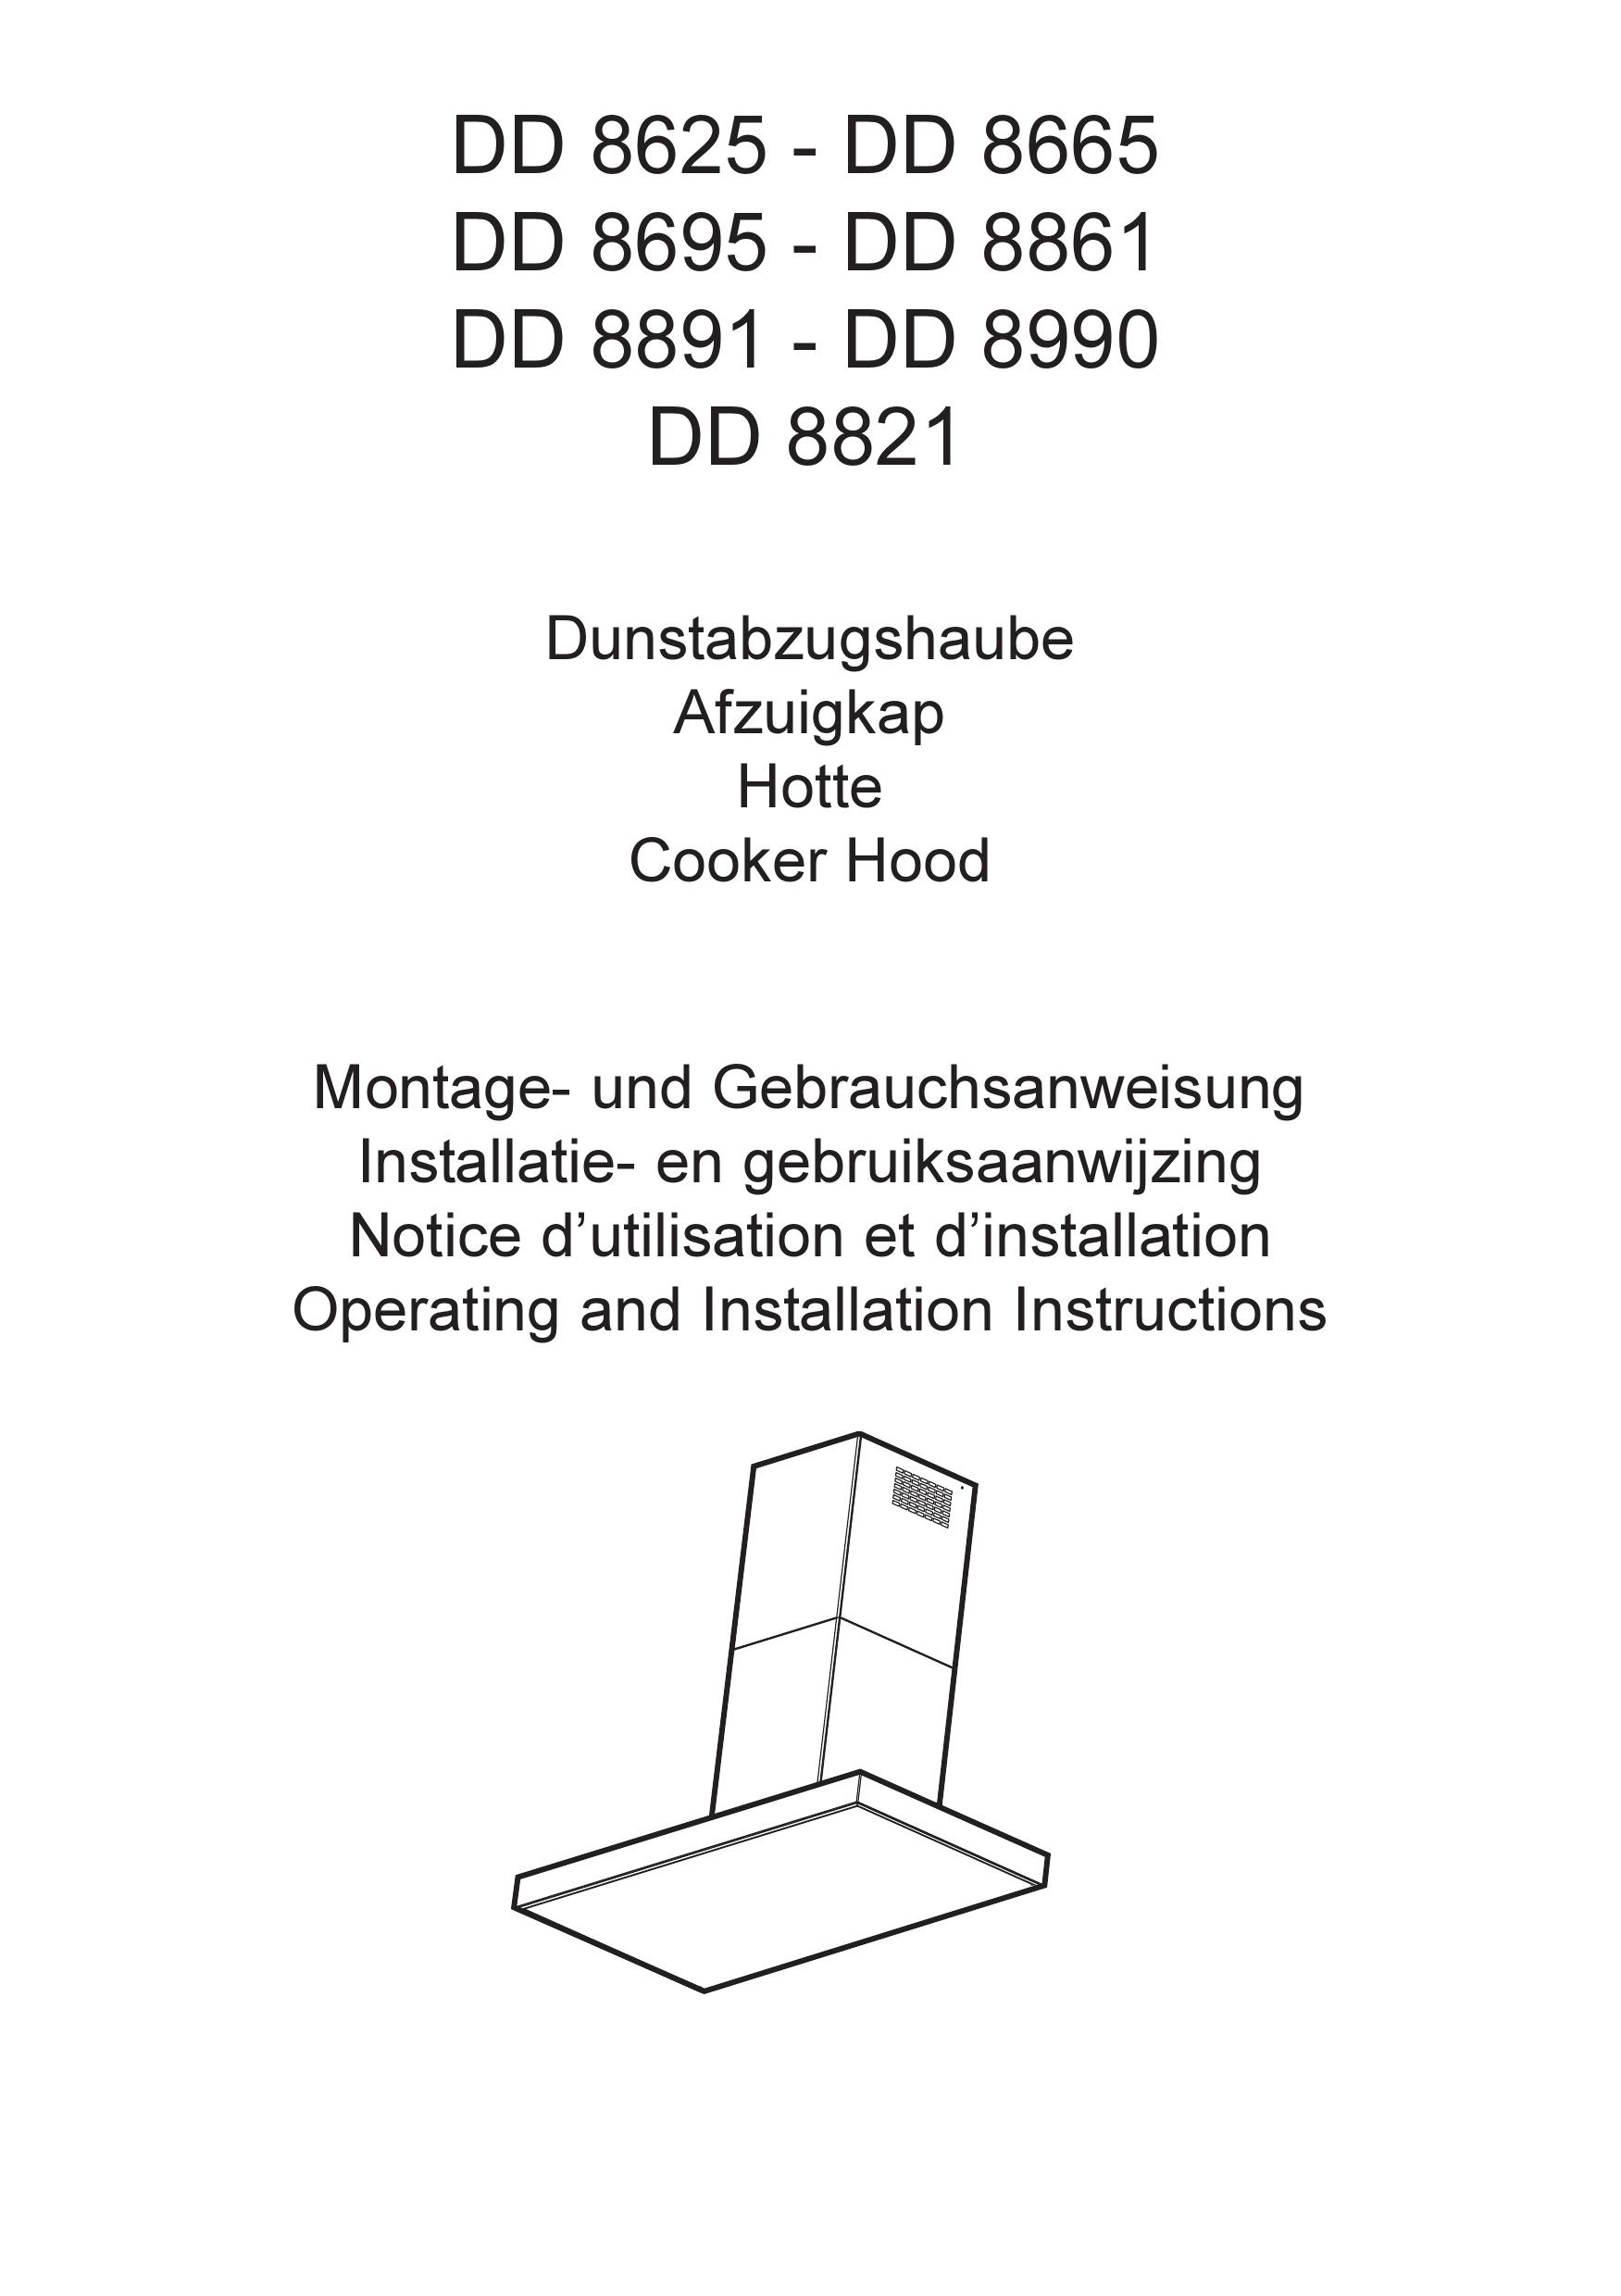 AEG DD 8625 Ventilation Hood User Manual